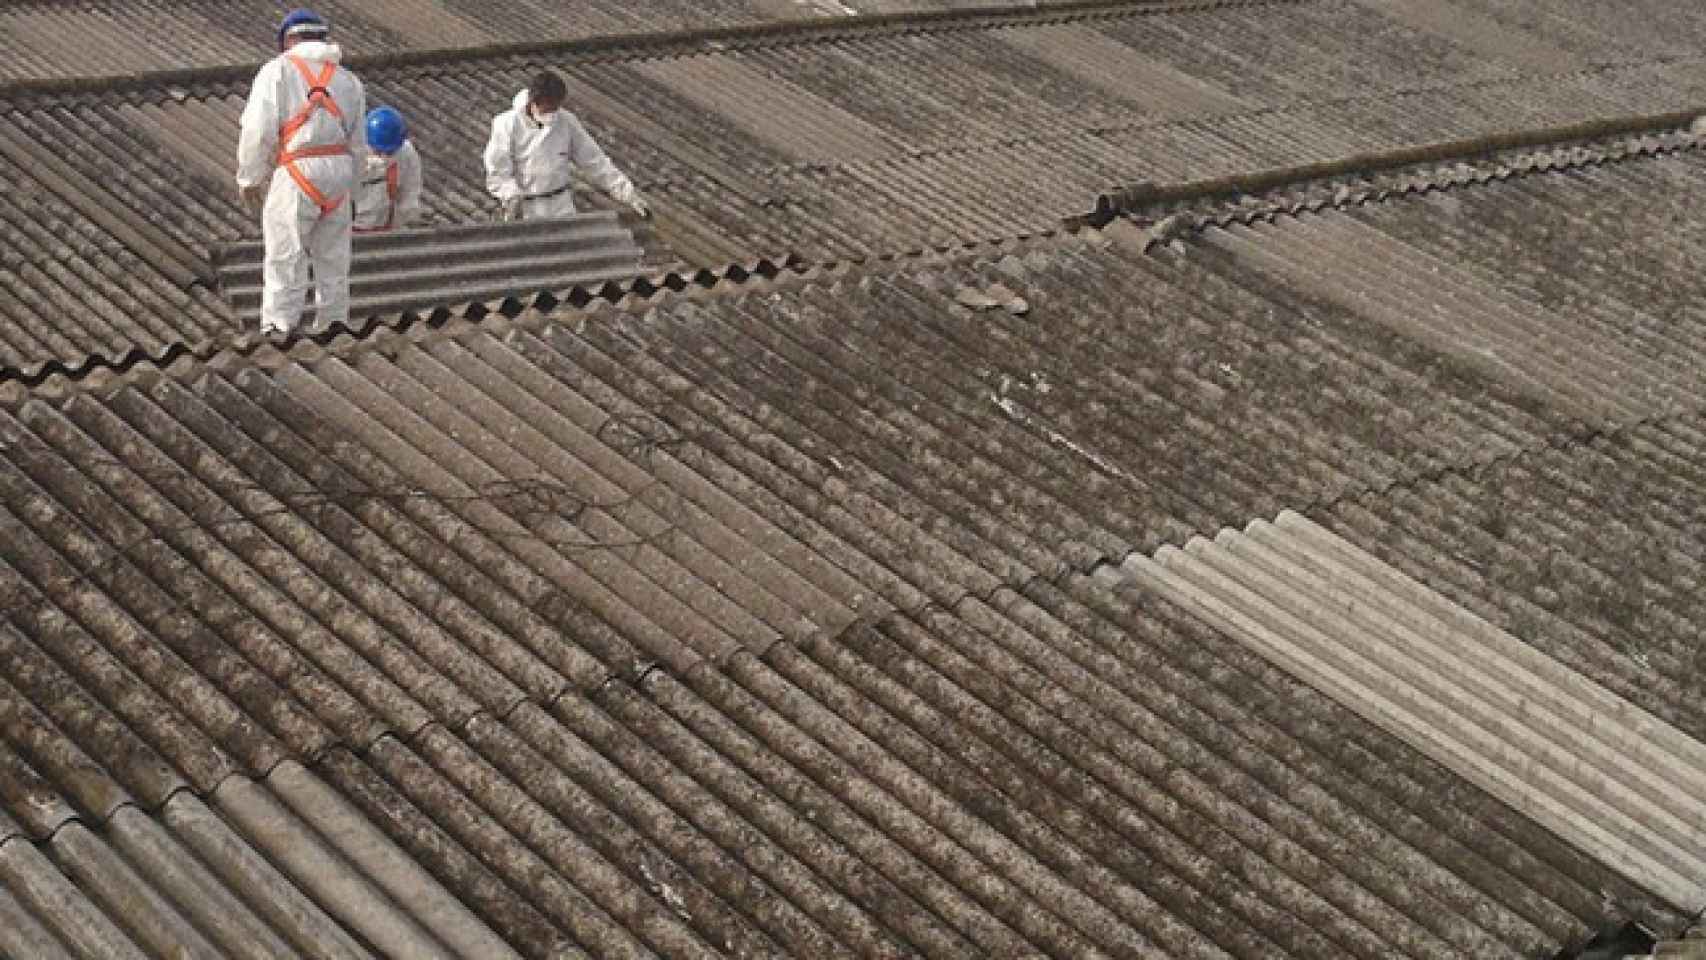 Desde 2002, en España está prohibido el uso de amianto, que solía usarse para techados. En la imagen, dos operarios retirando un tejado de uralita.